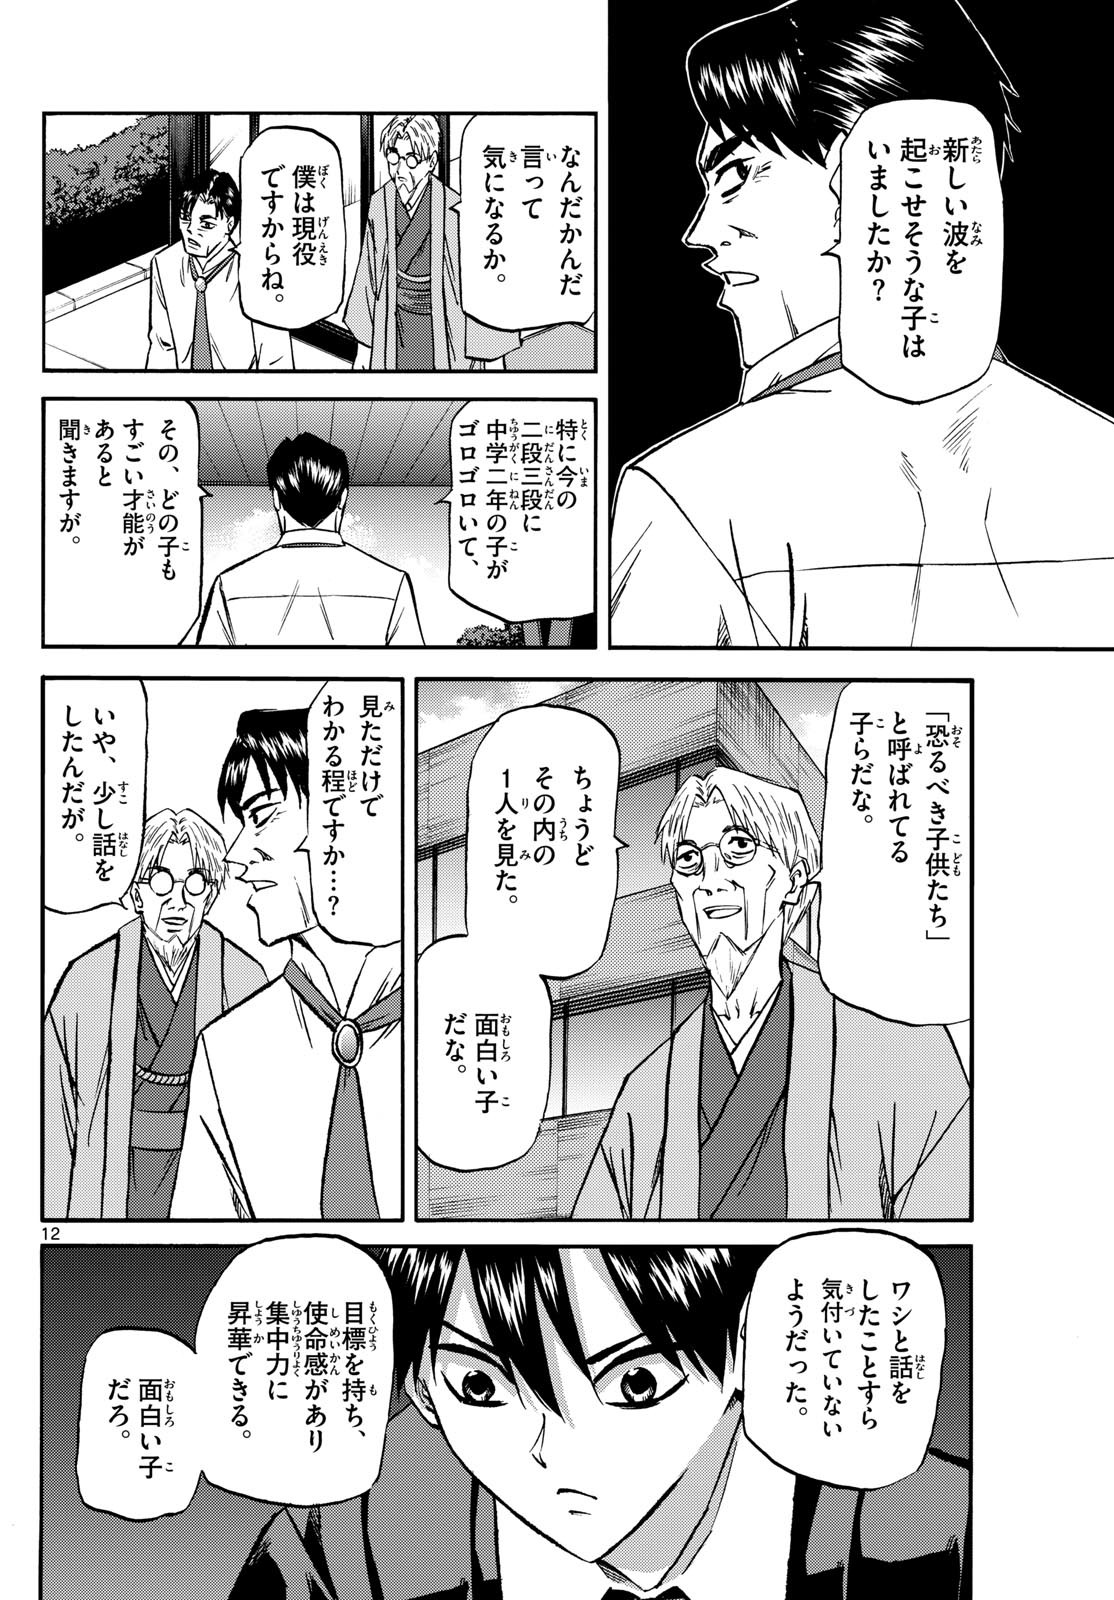 Ryu-to-Ichigo - Chapter 181 - Page 12